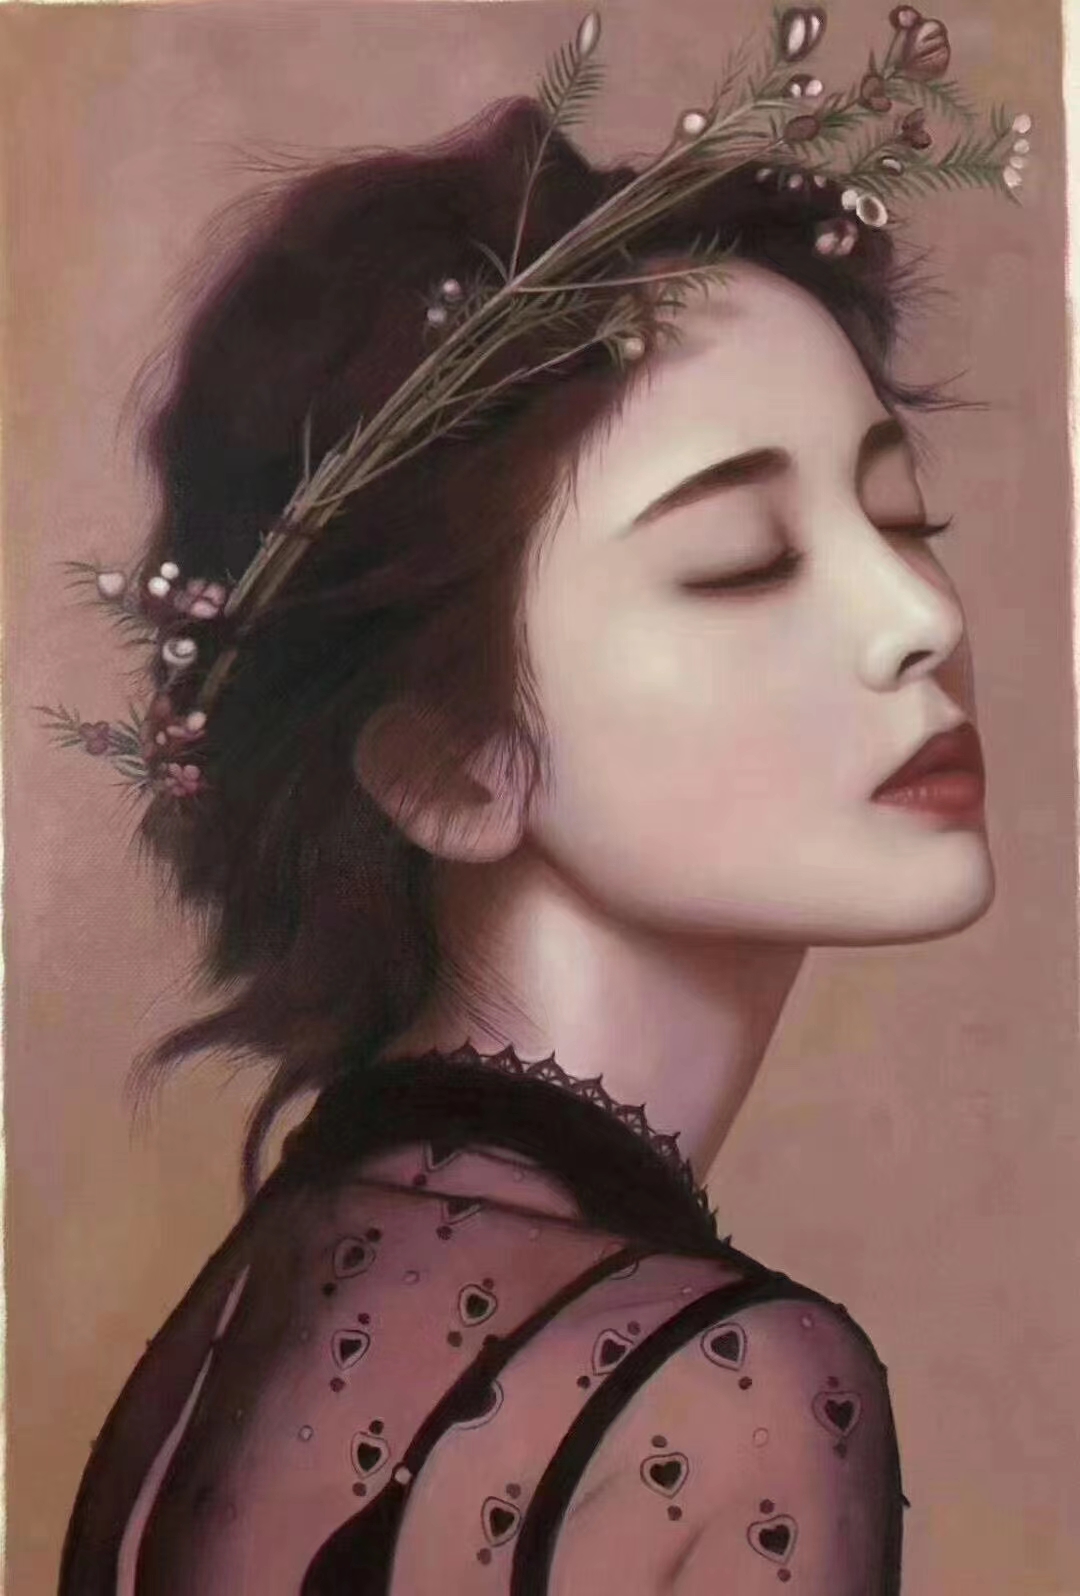 画出自信,画出活力,画出风采——朝鲜人物油画肖像作品赏析之一